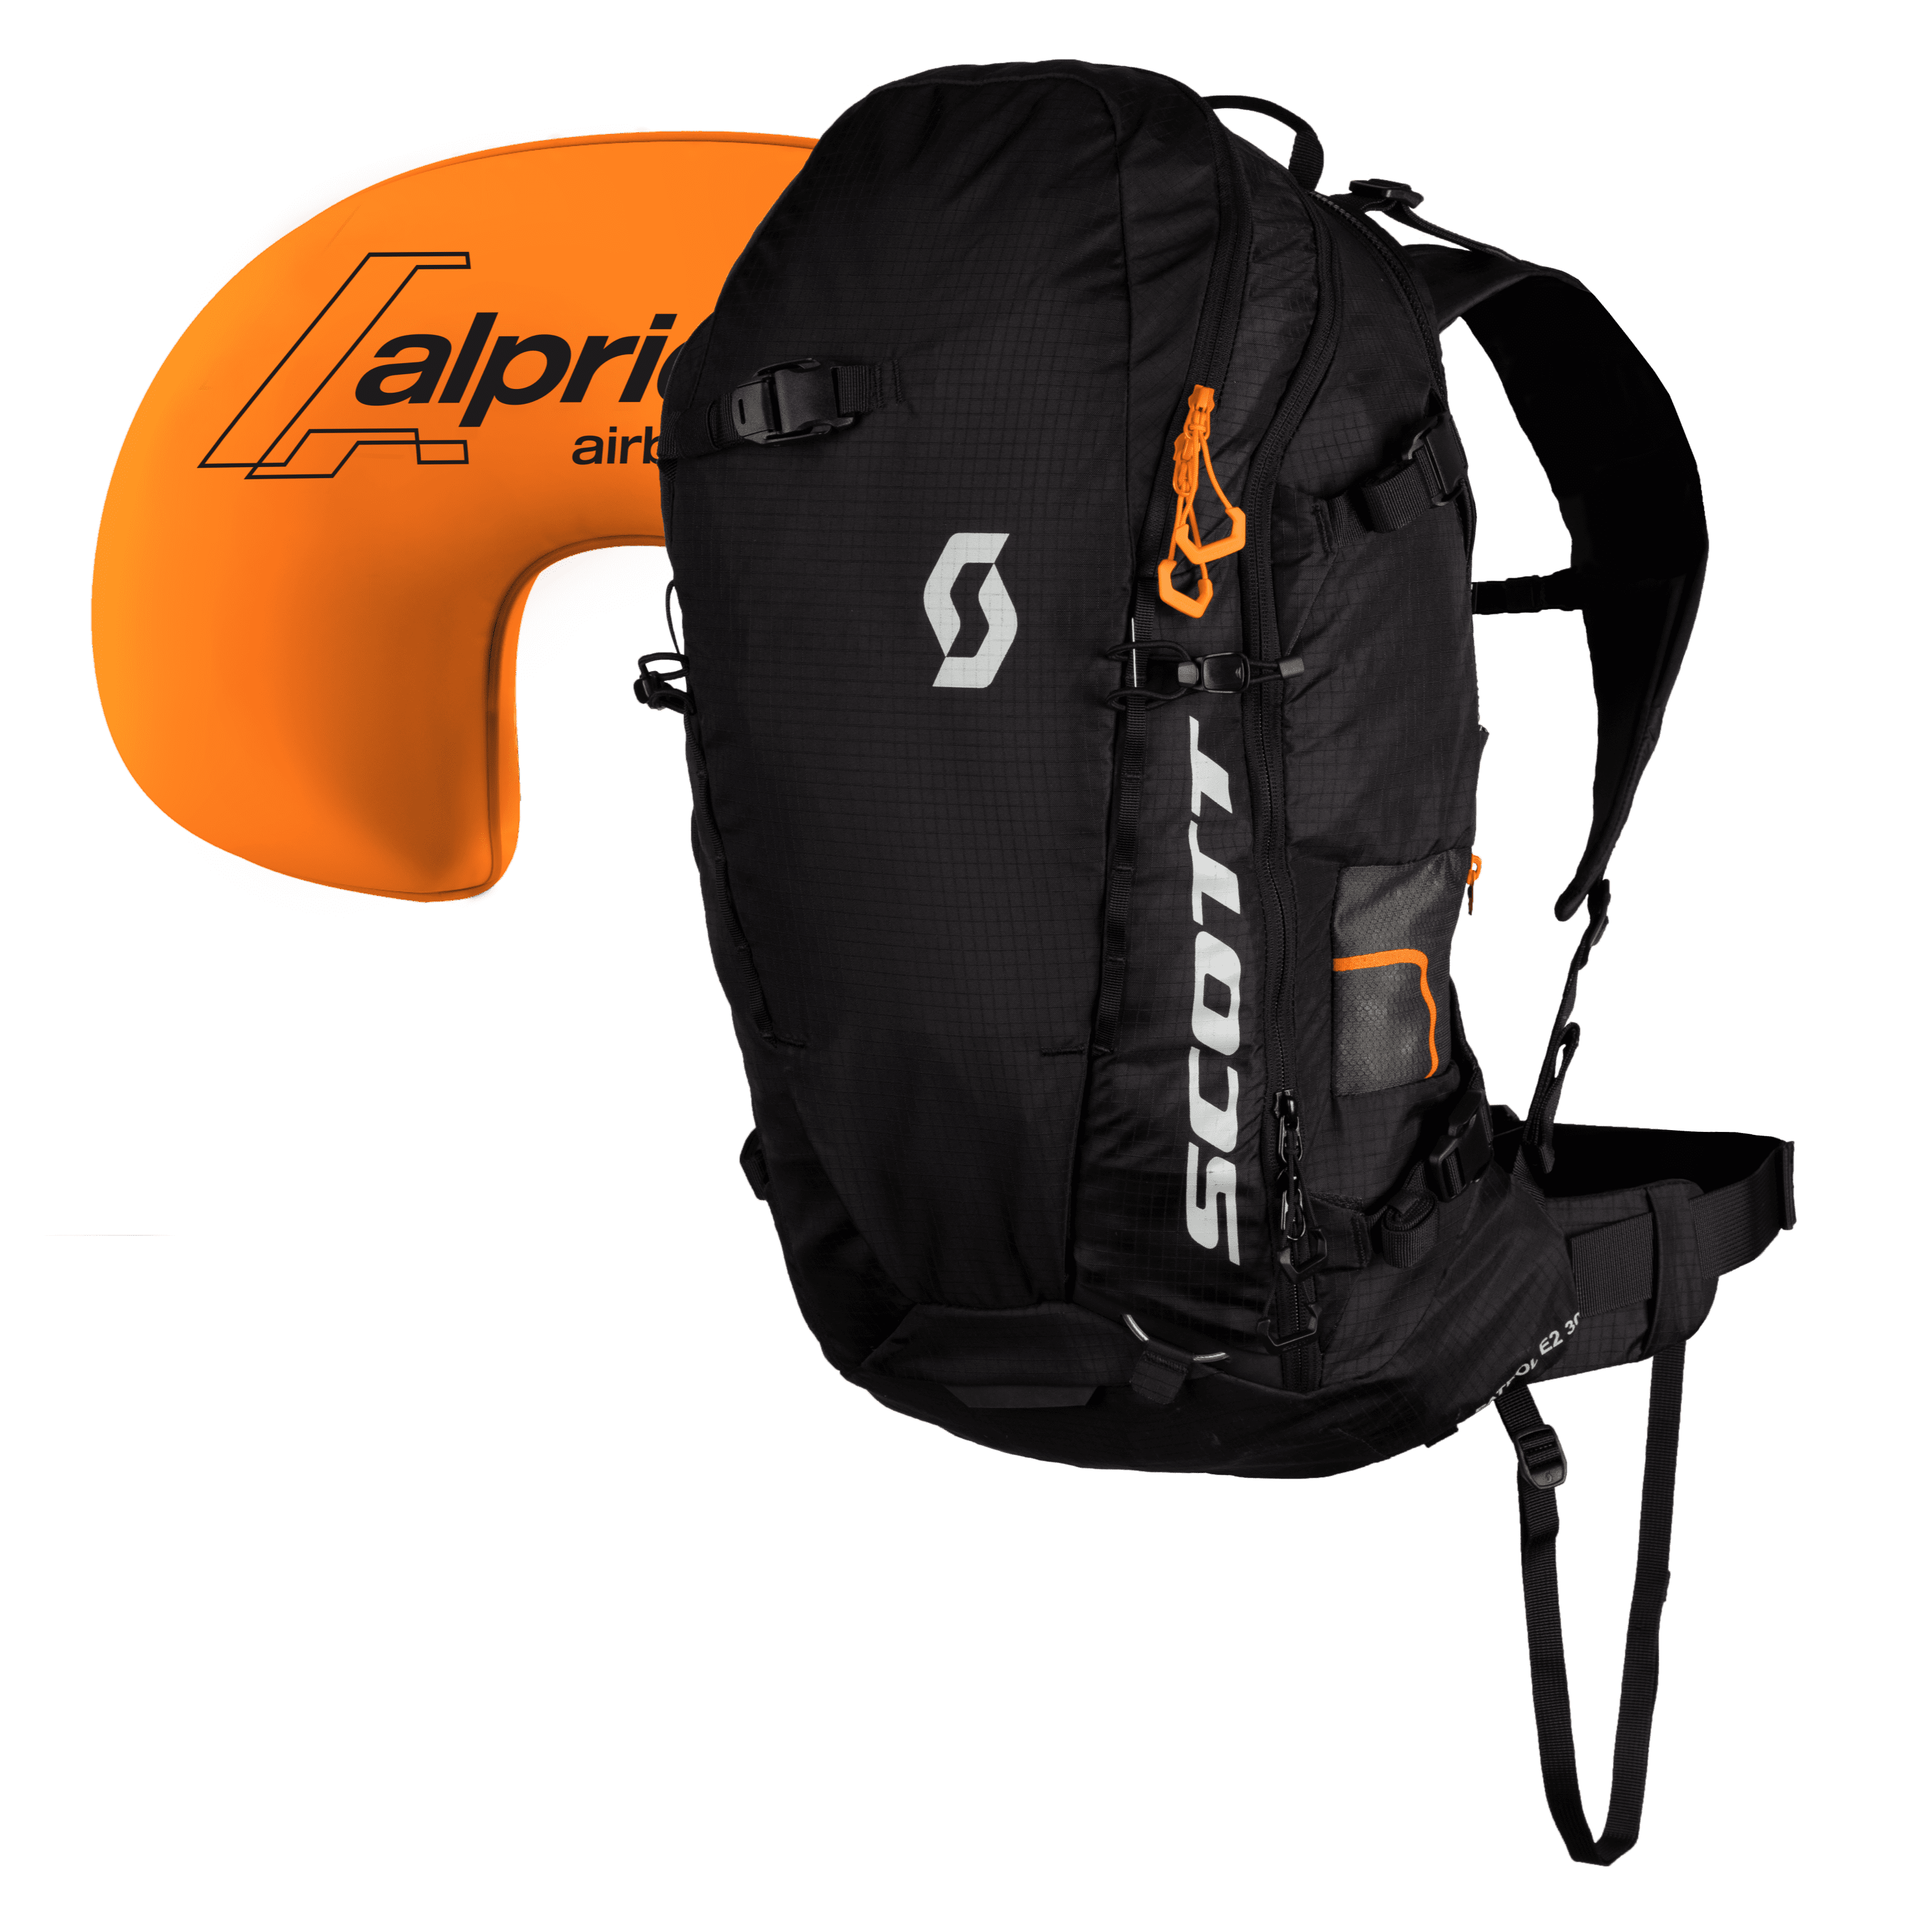 Patrol E2 30 Backpack Kit